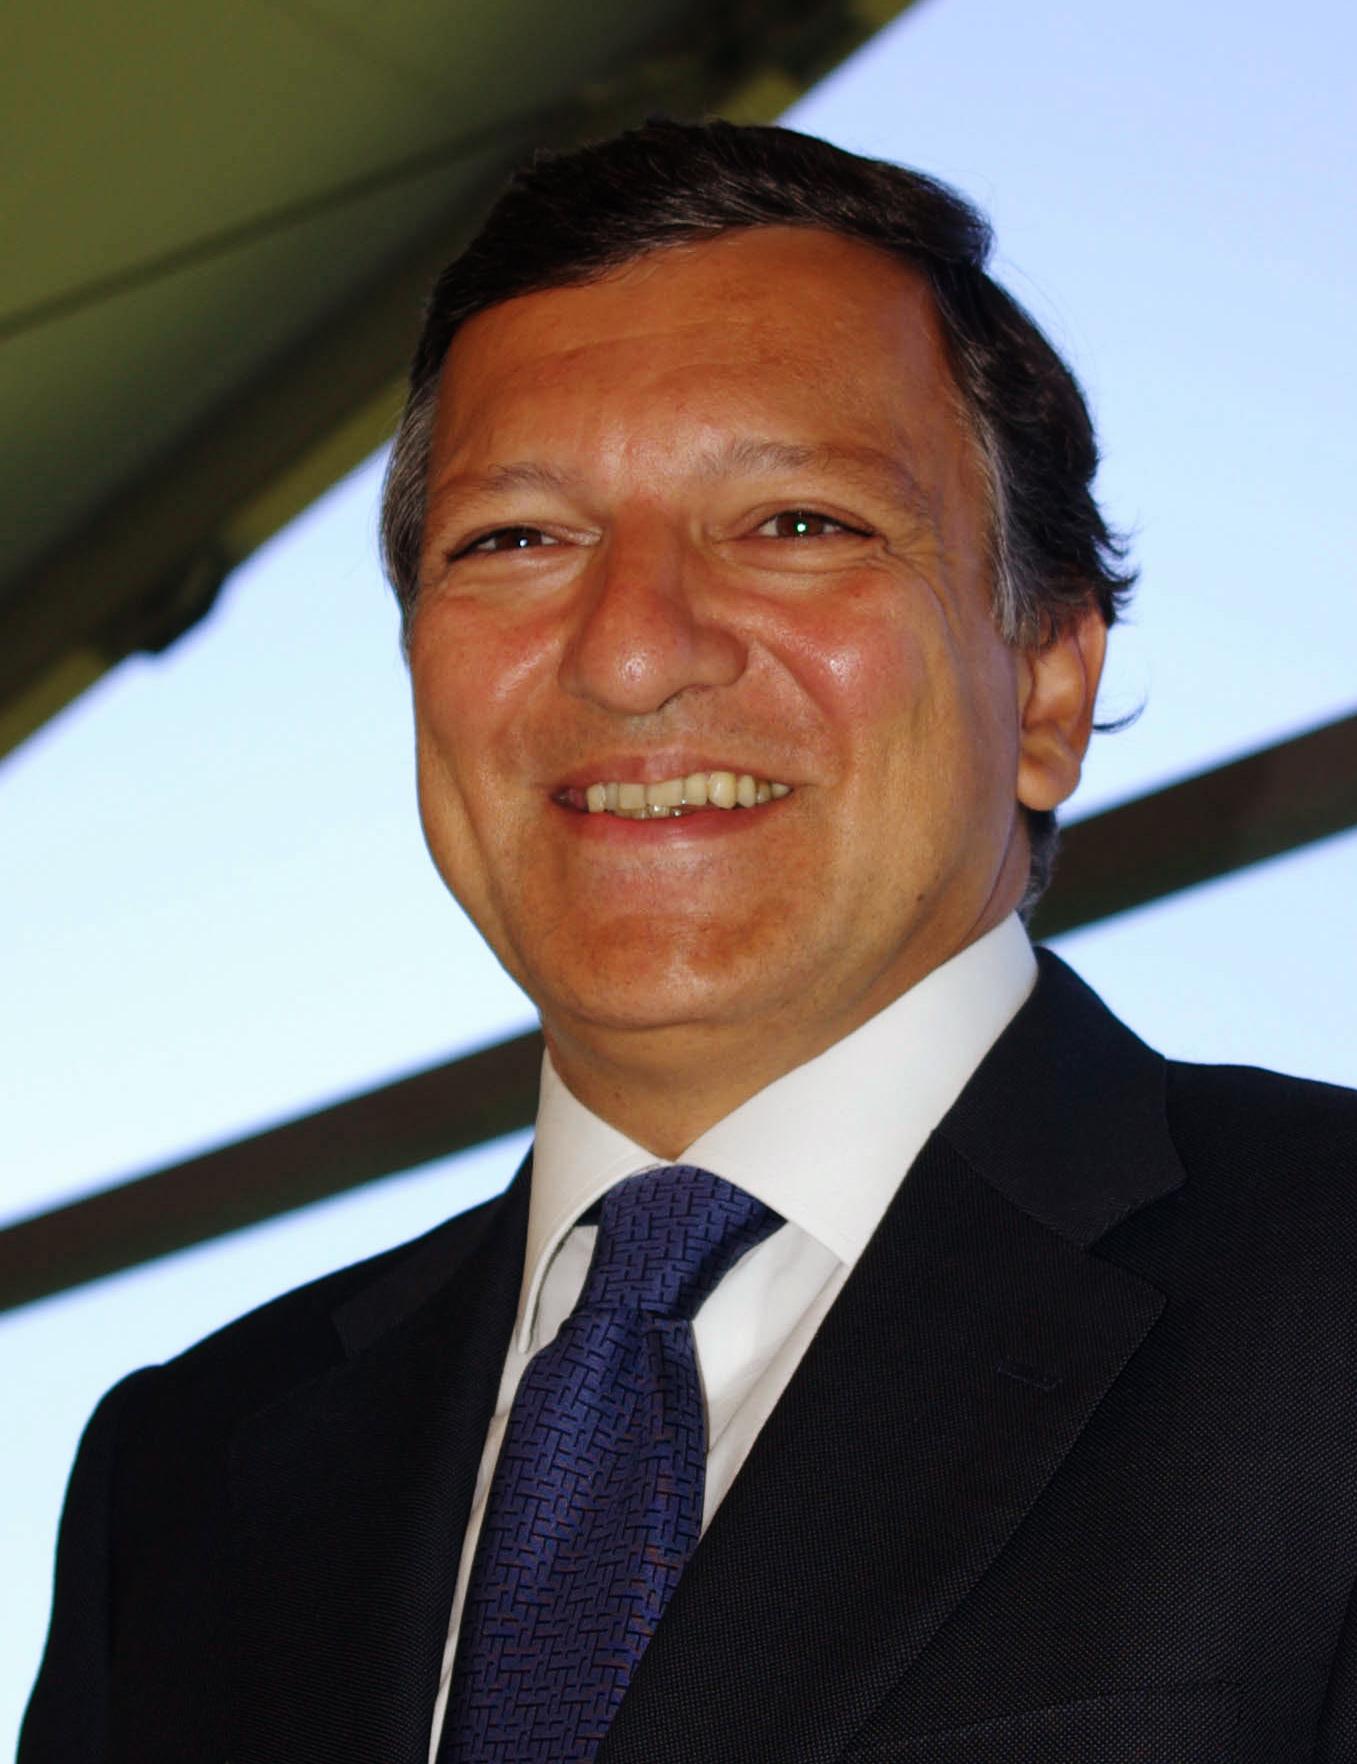 Un vote sanction pour Barroso